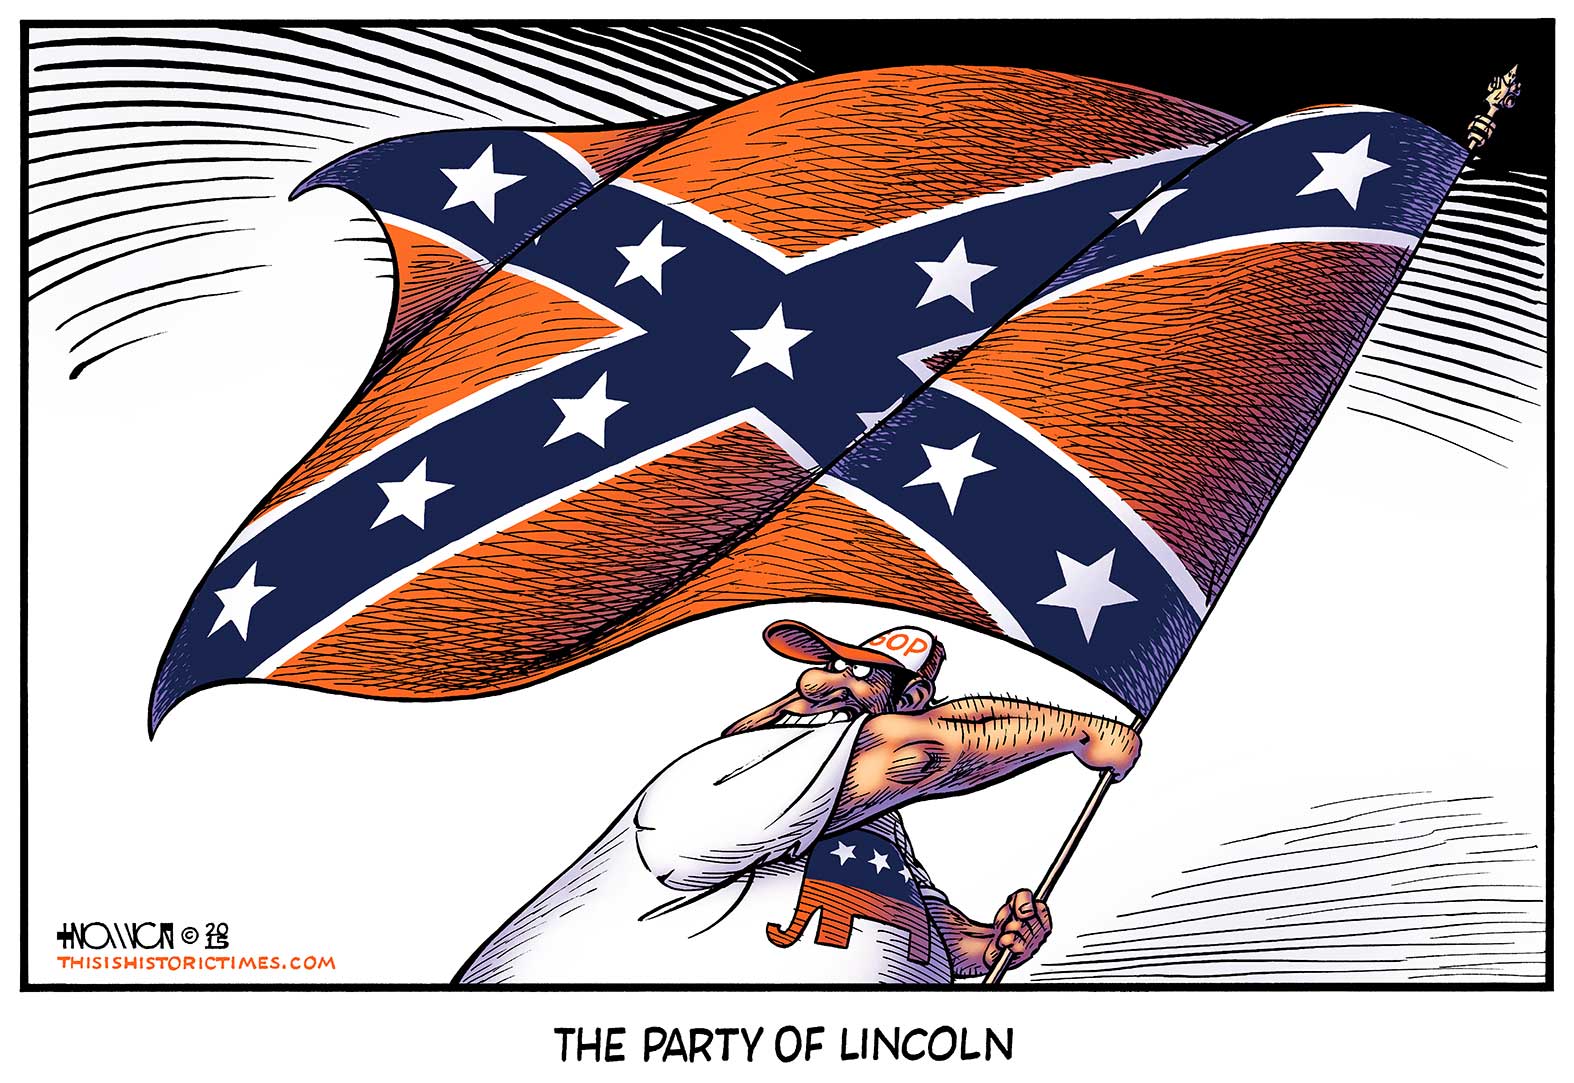 Lincolnfederates